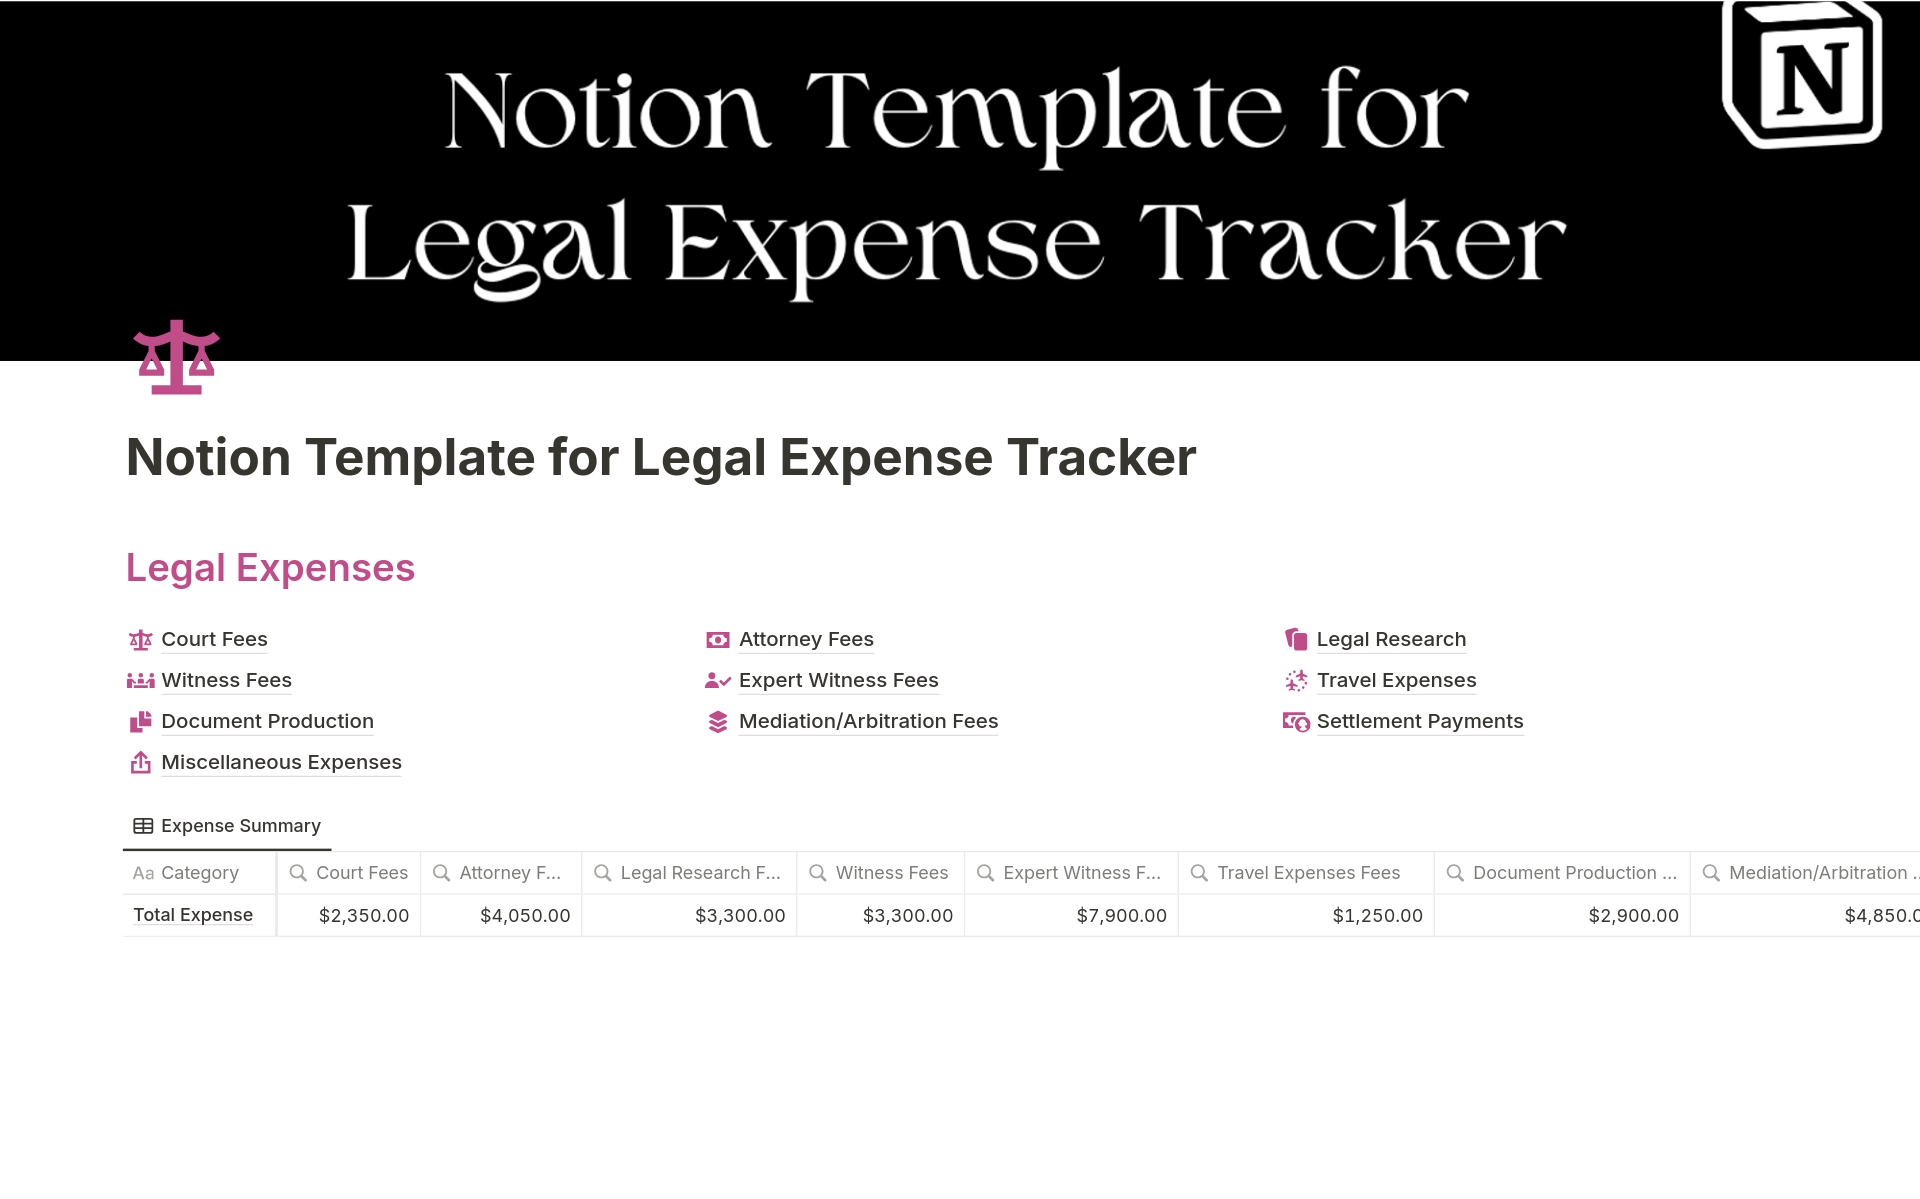 Vista previa de plantilla para Legal Expense Tracker